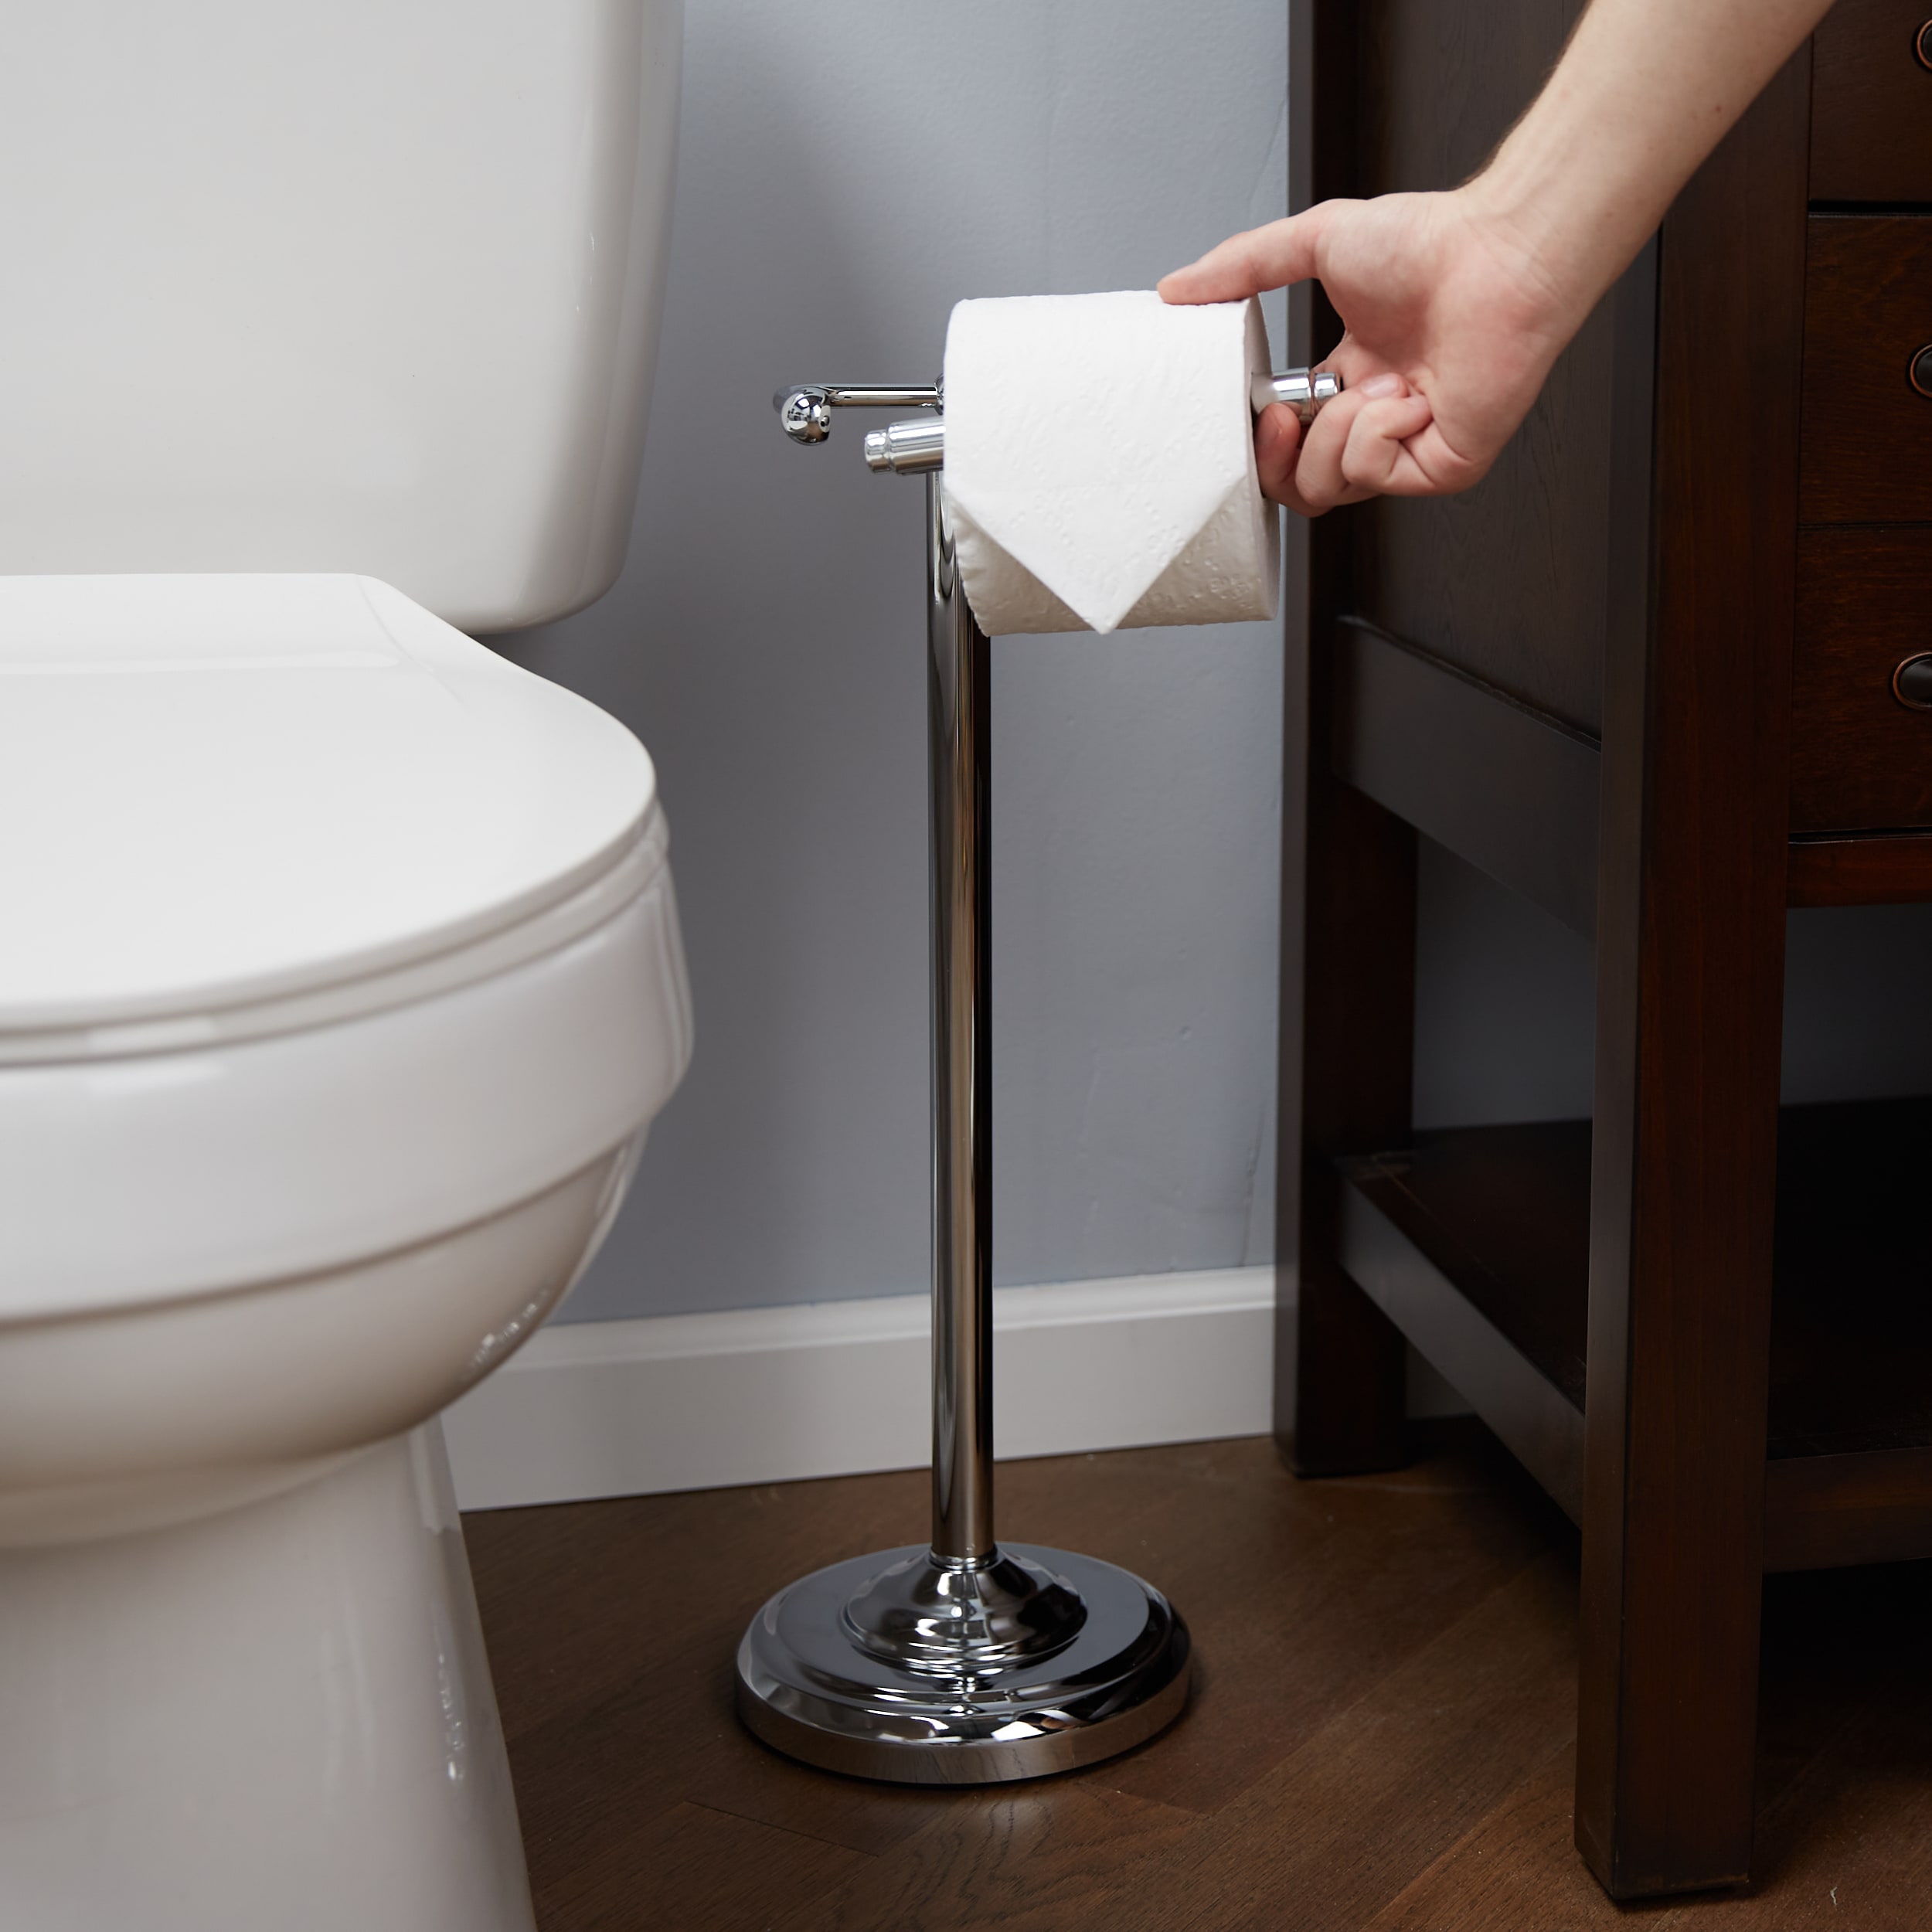 Freestanding Toilet Tissue Holder Chrome - Nu Steel : Target